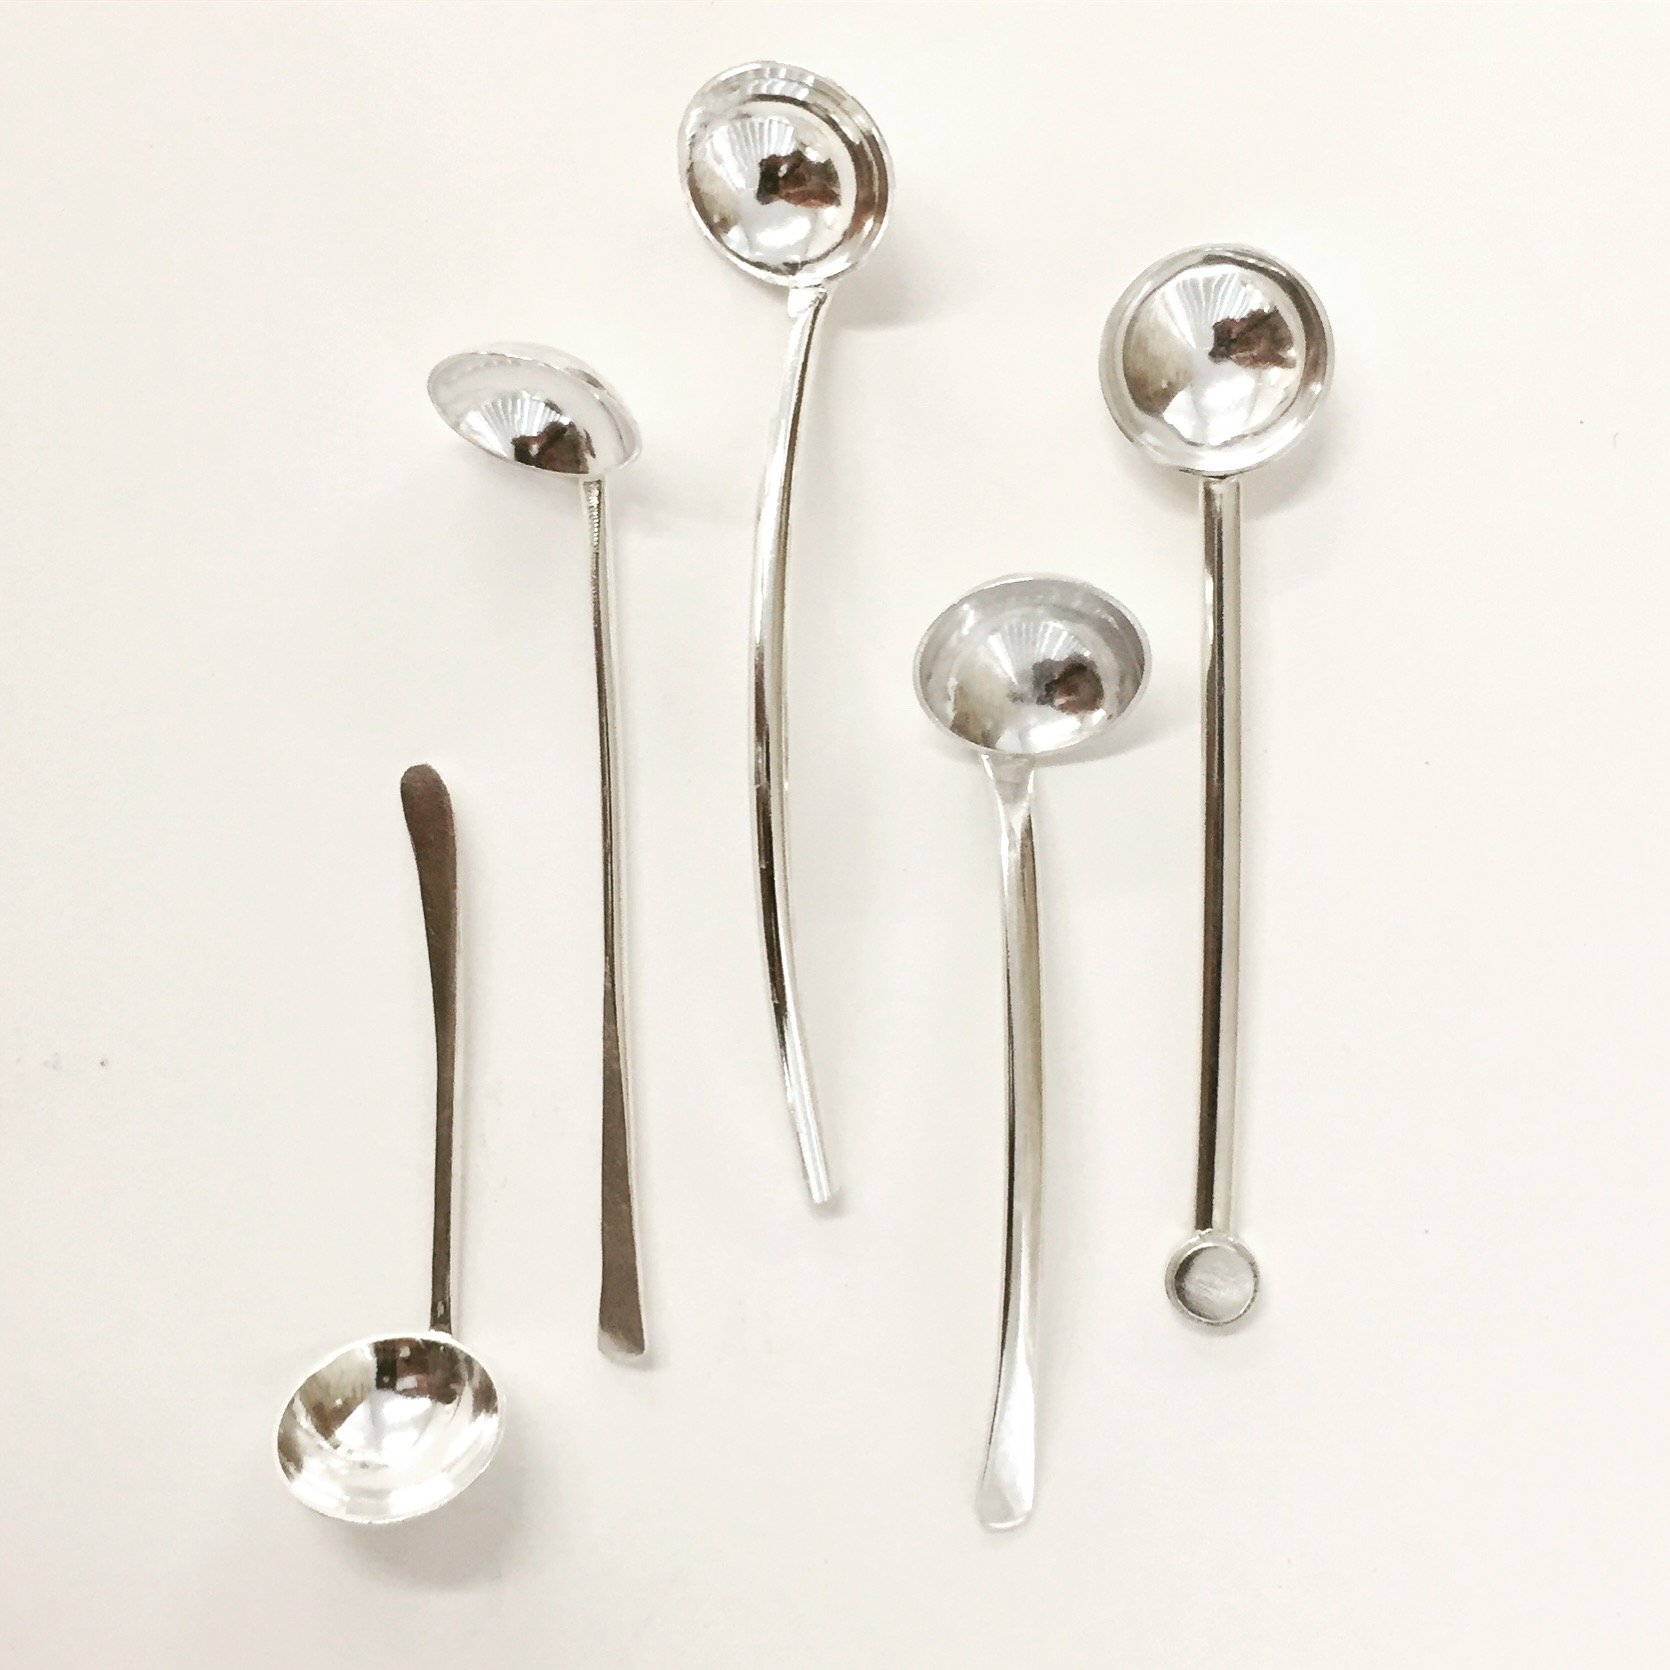 beccy-gillatt-silver-spoons-set.jpeg